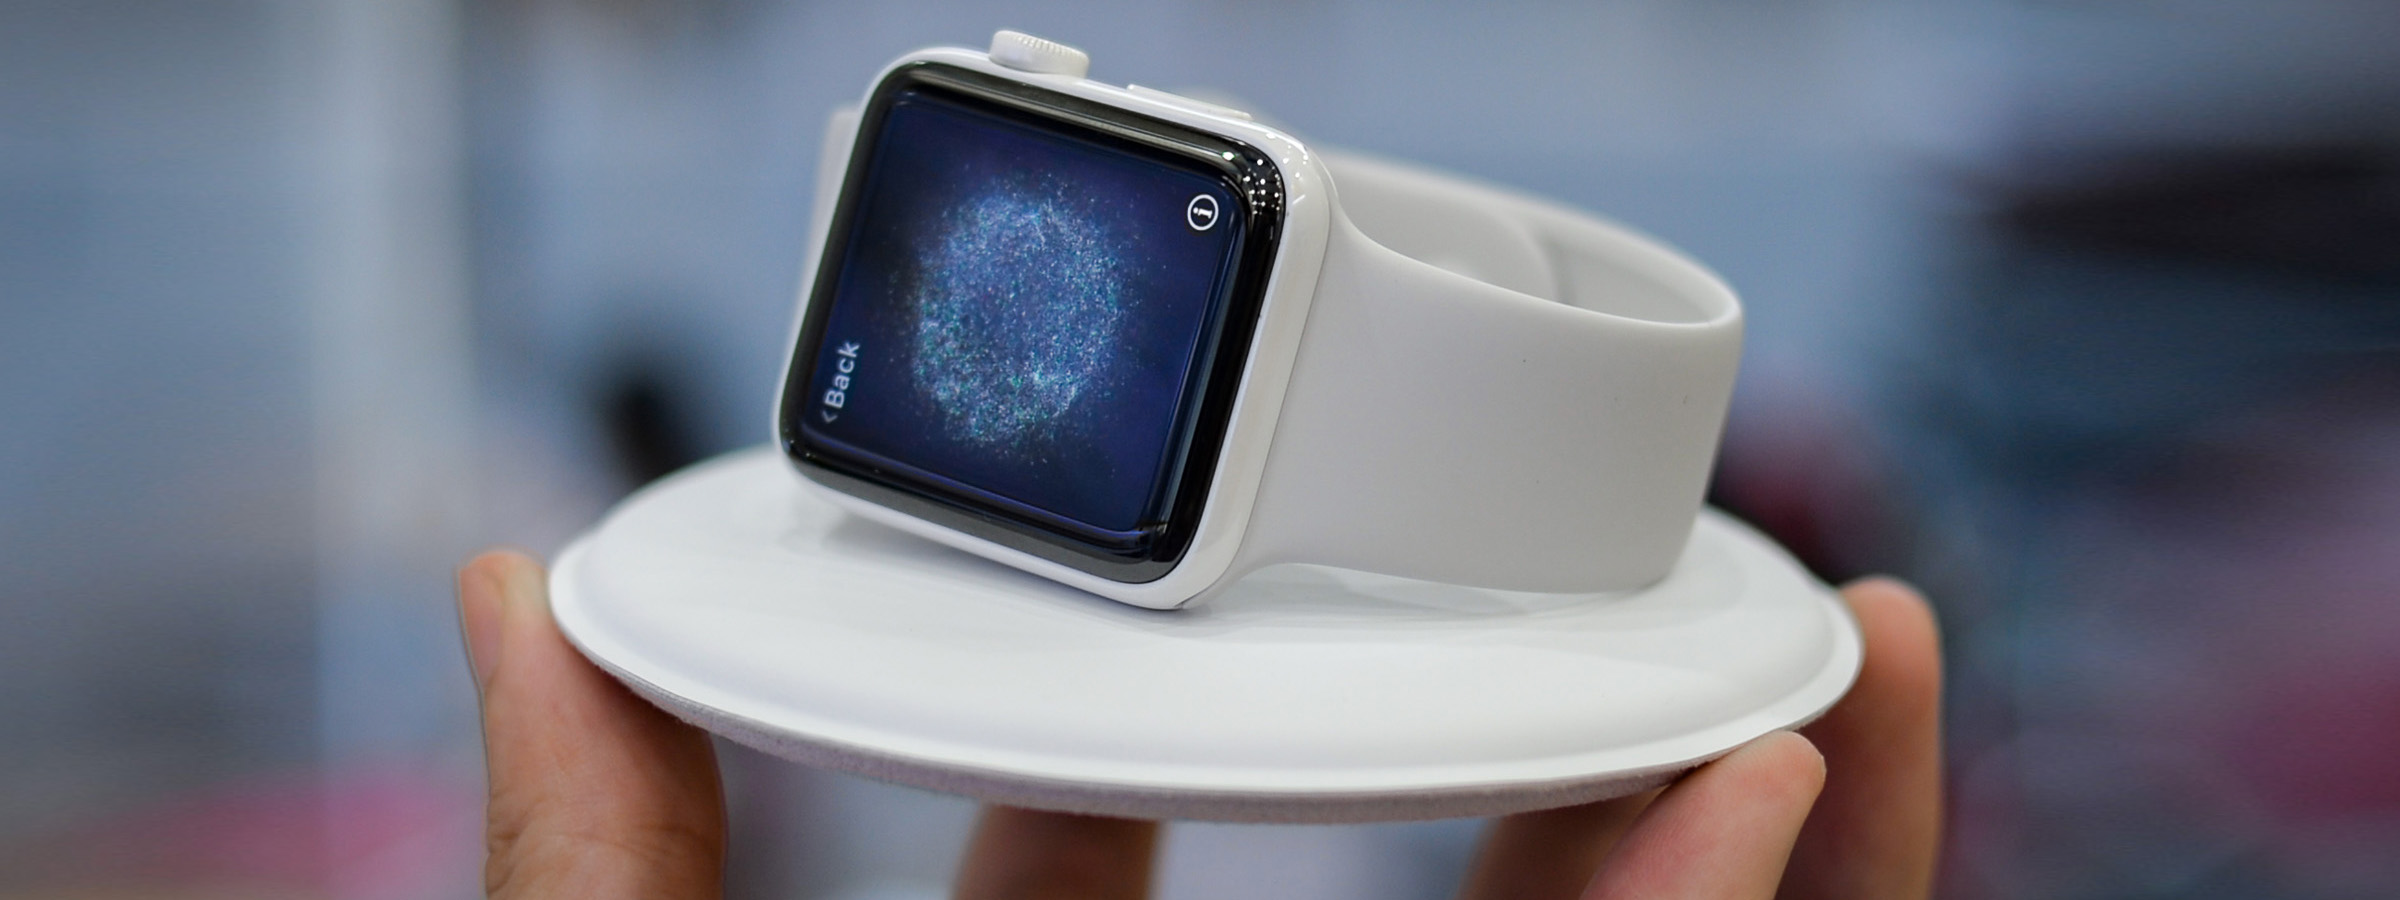 Apple Watch mới năm nay sẽ có bản tích hợp 4G LTE, thiết kế mới?